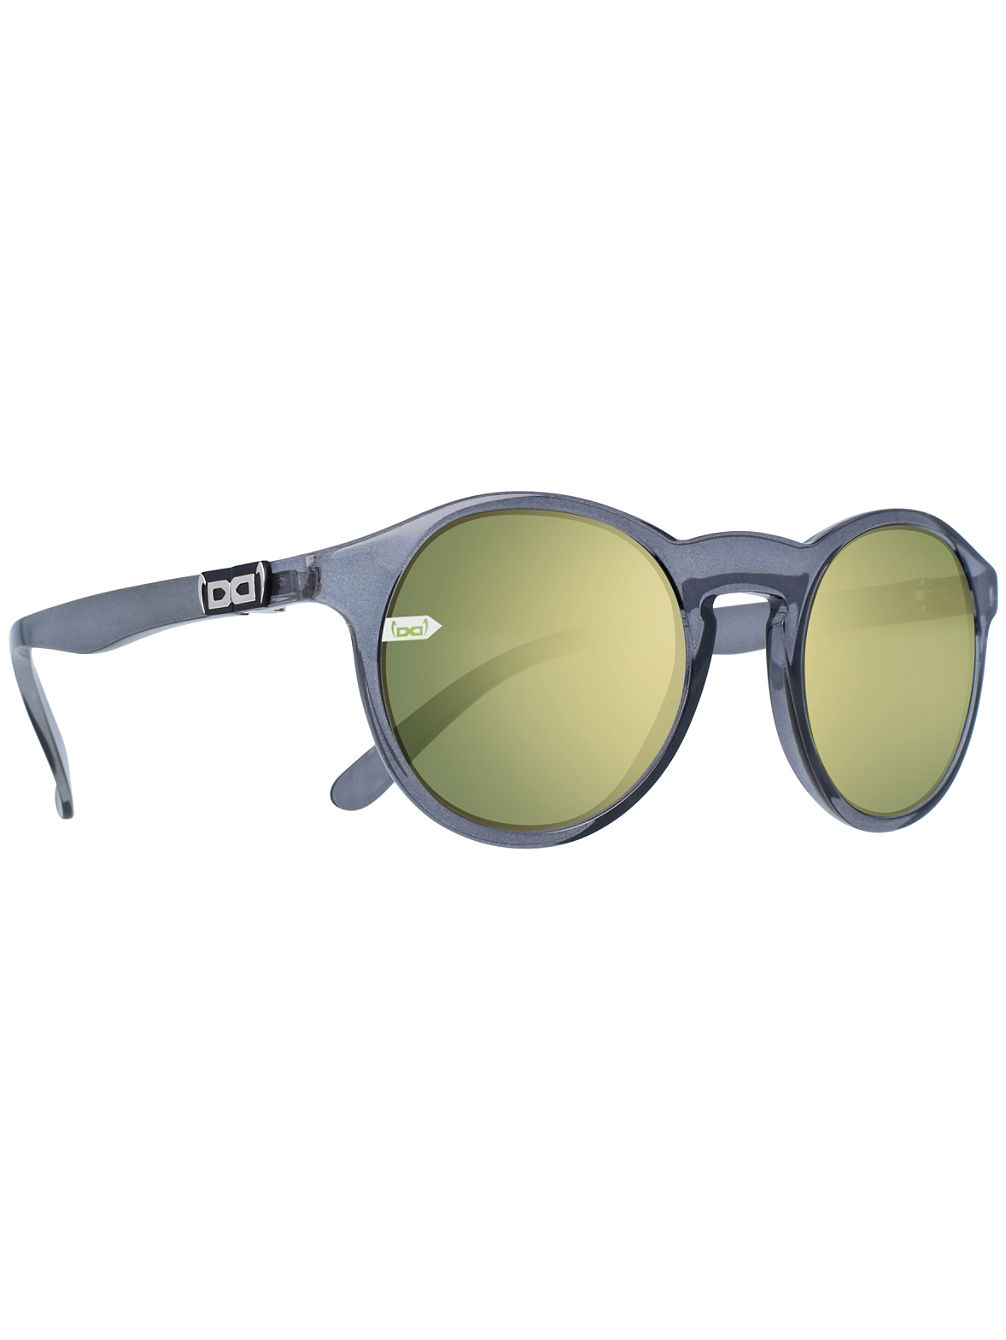 GI8 Panto Grey Sonnenbrille